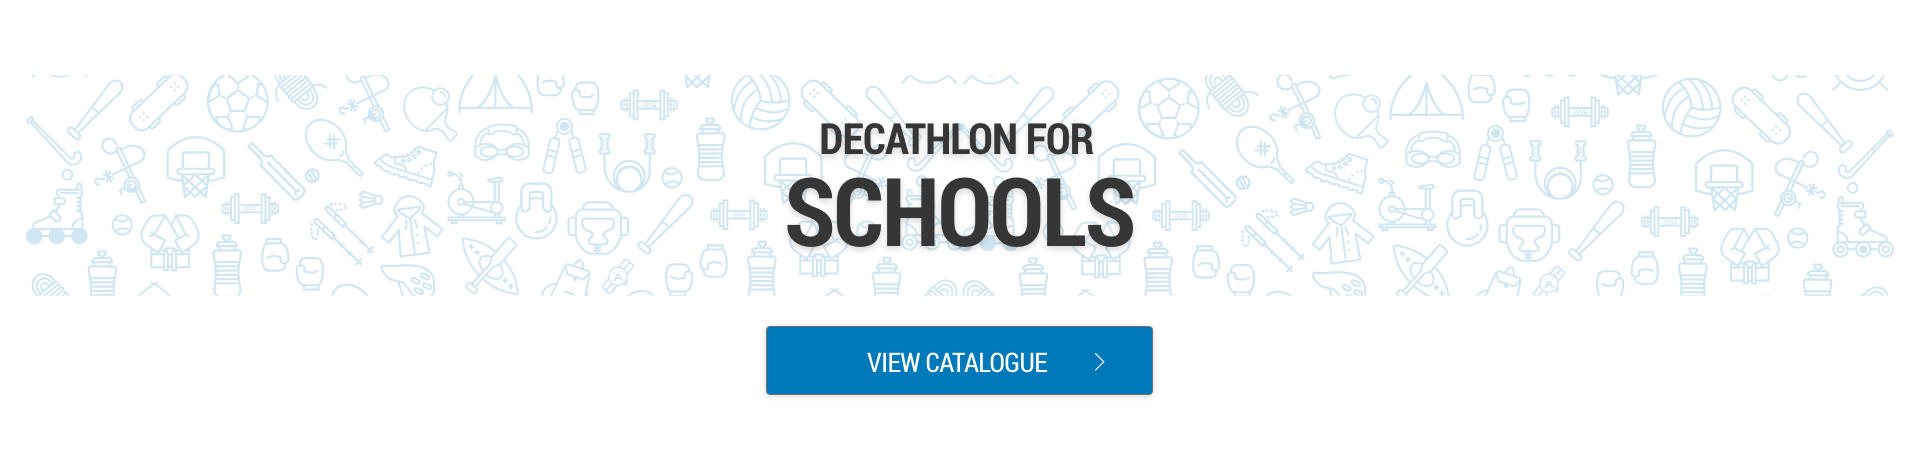 decathlon b2b